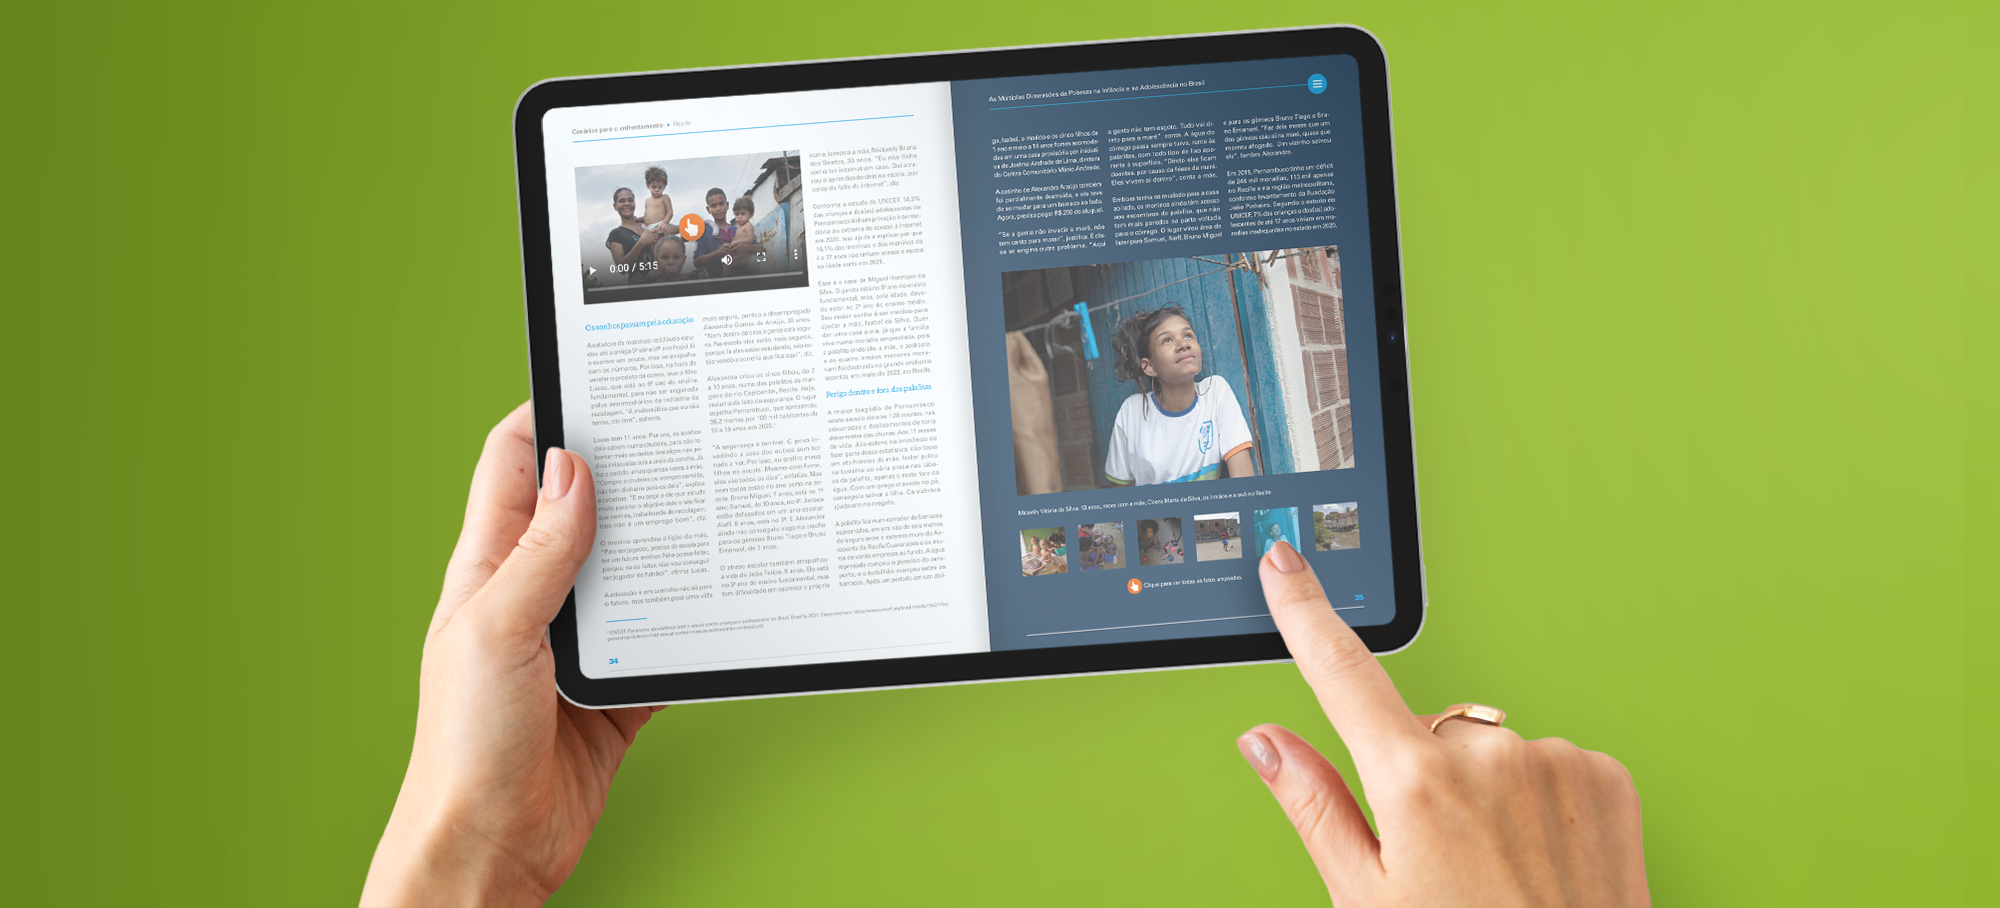 Simulação de tela de tablet com imagem de um livro interativo, incluindo fotos, vídeos e galeria de imagens